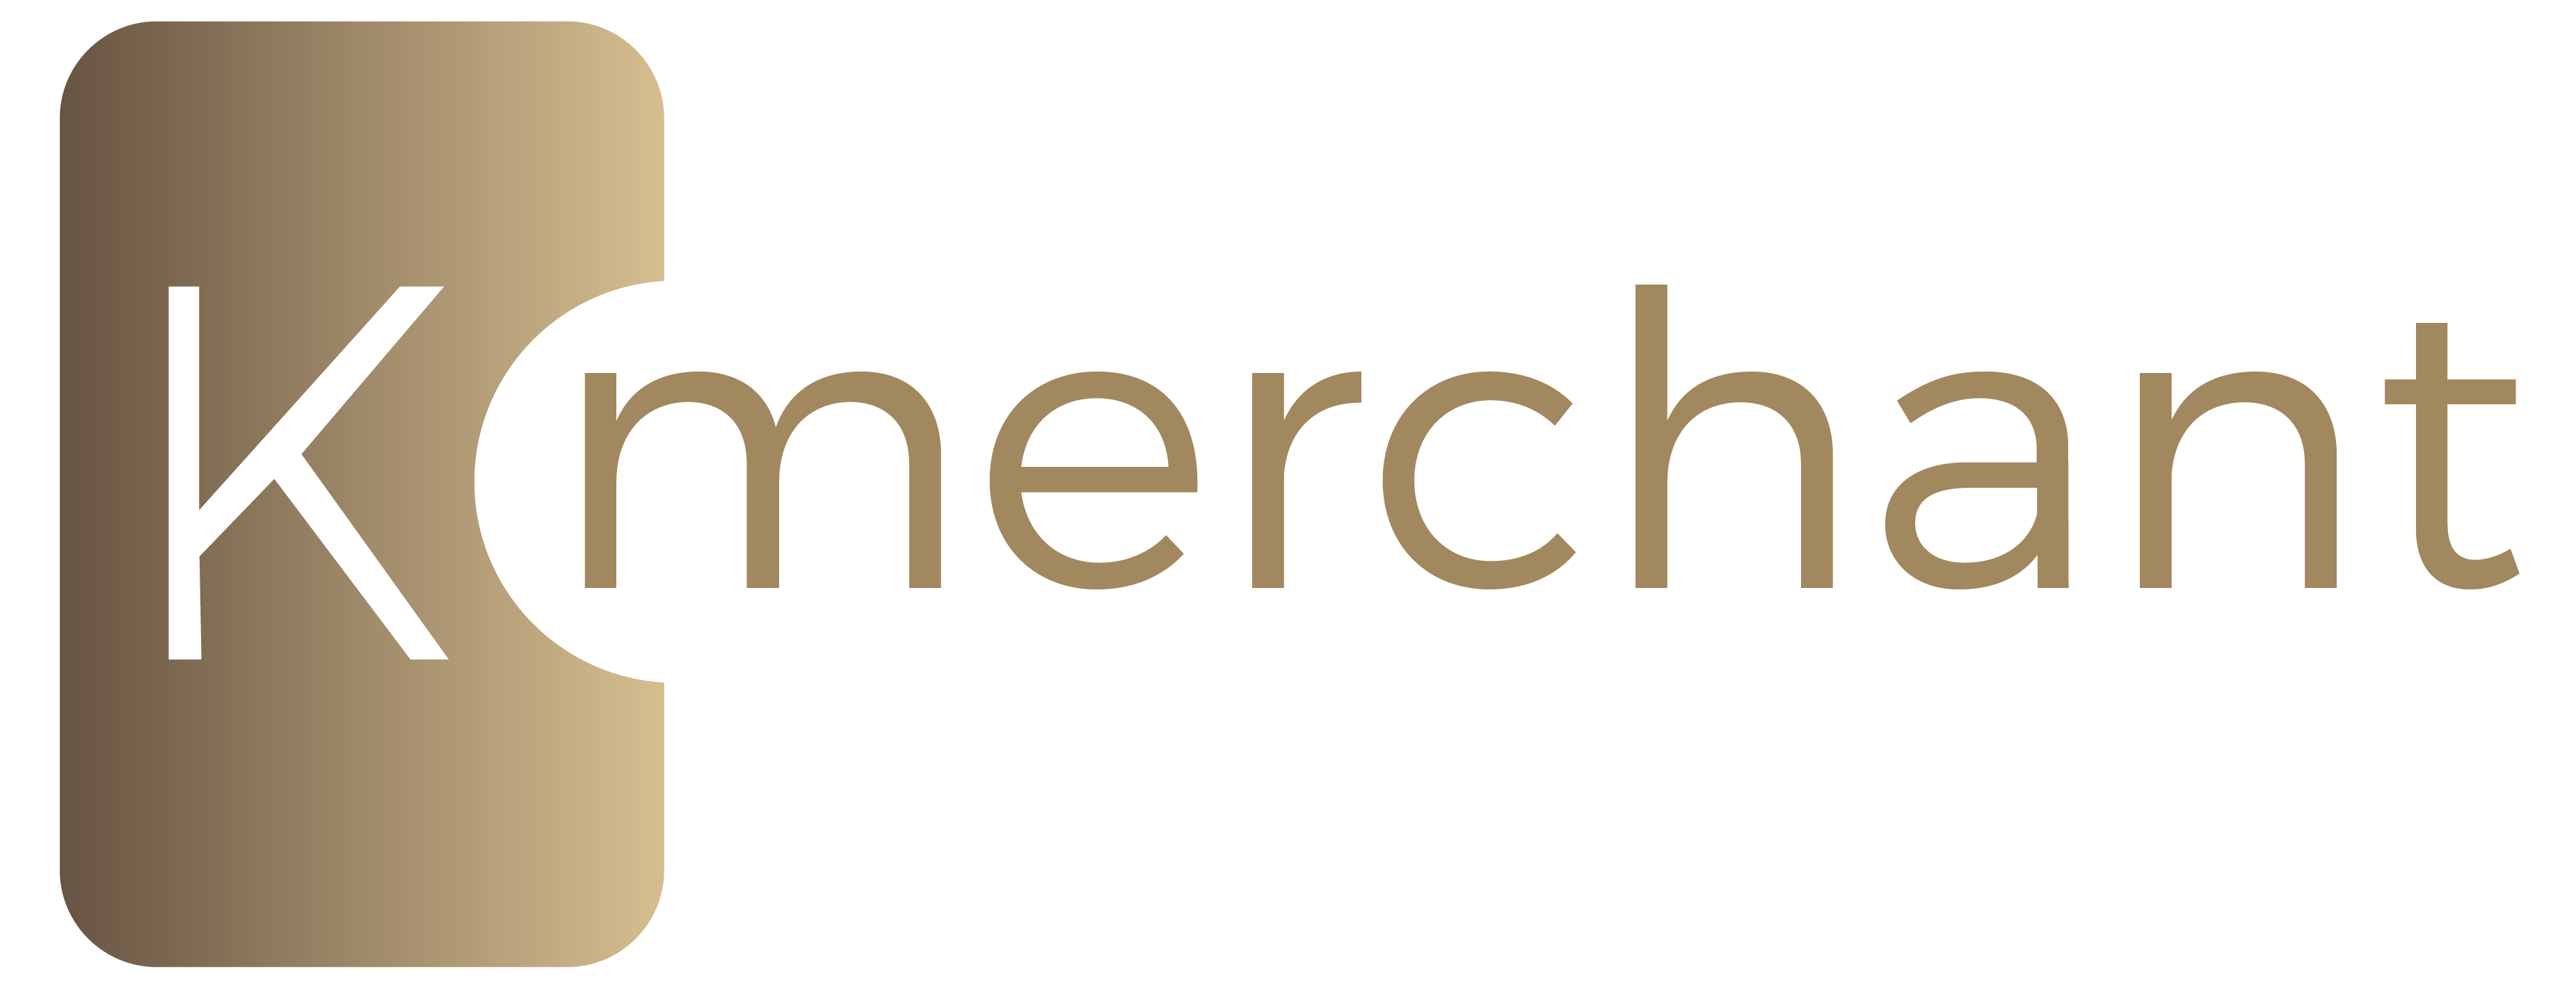 K-merchant